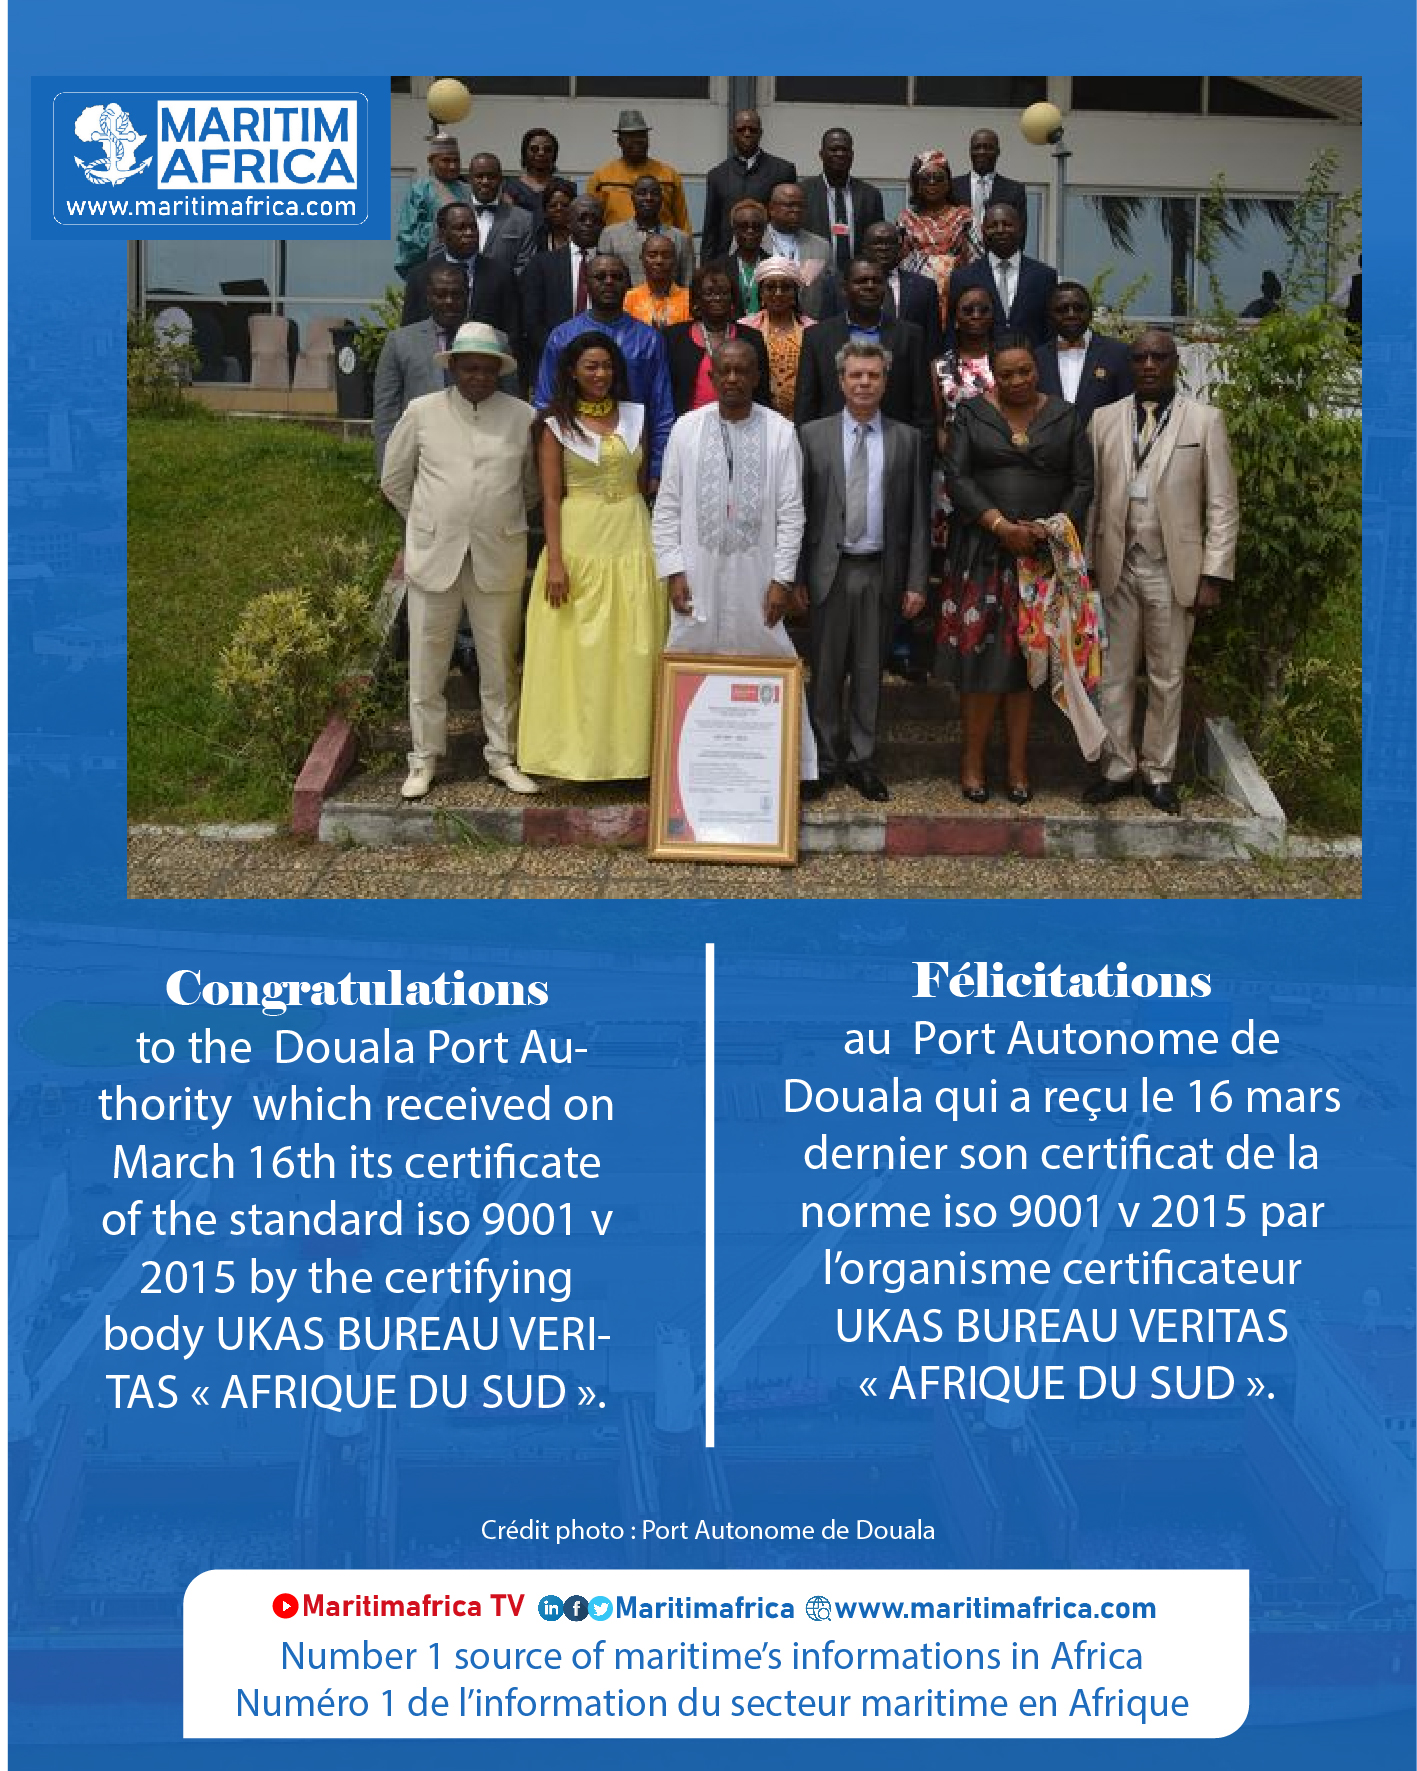 Le Port Autonome de Douala reçoit son Certificat de la norme ISO 9001 v 2015